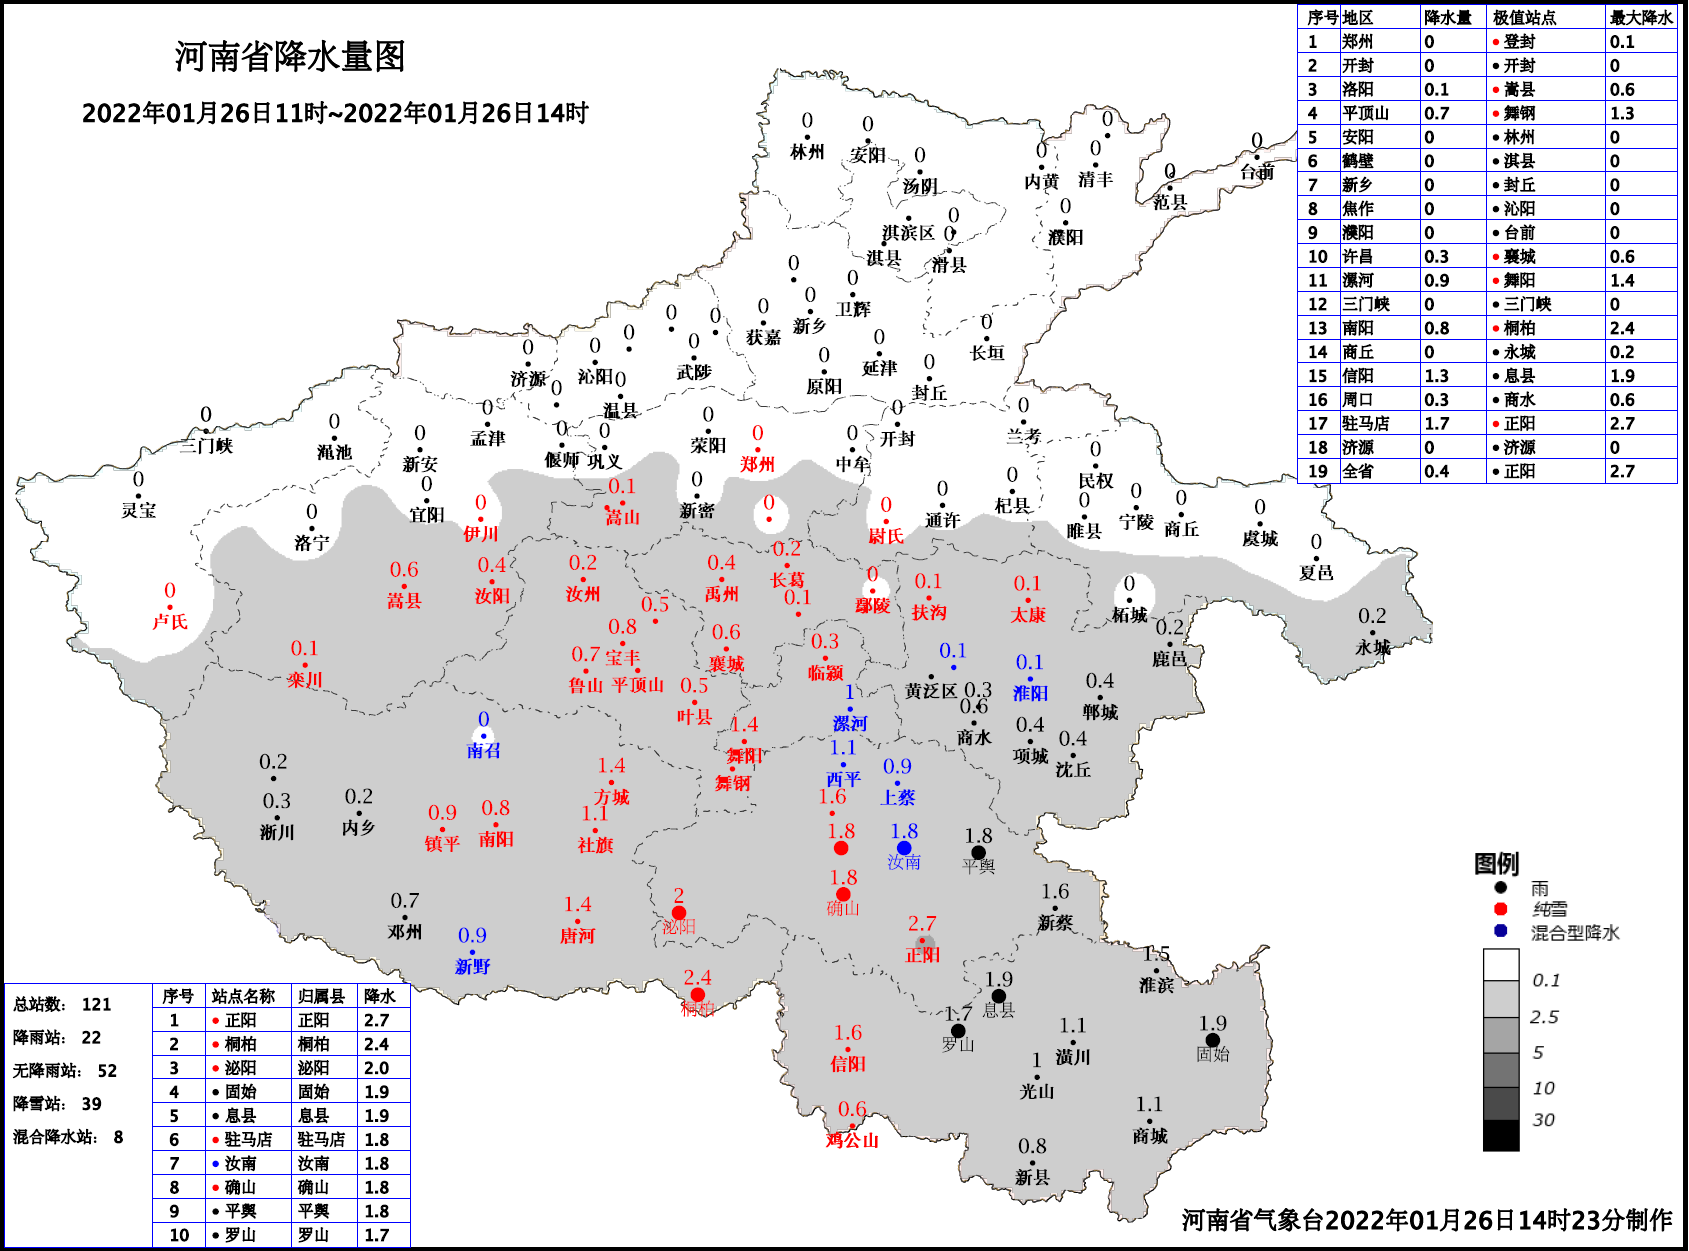 河南省气象局预报 1月27日黄河以南大部分地区有中雪